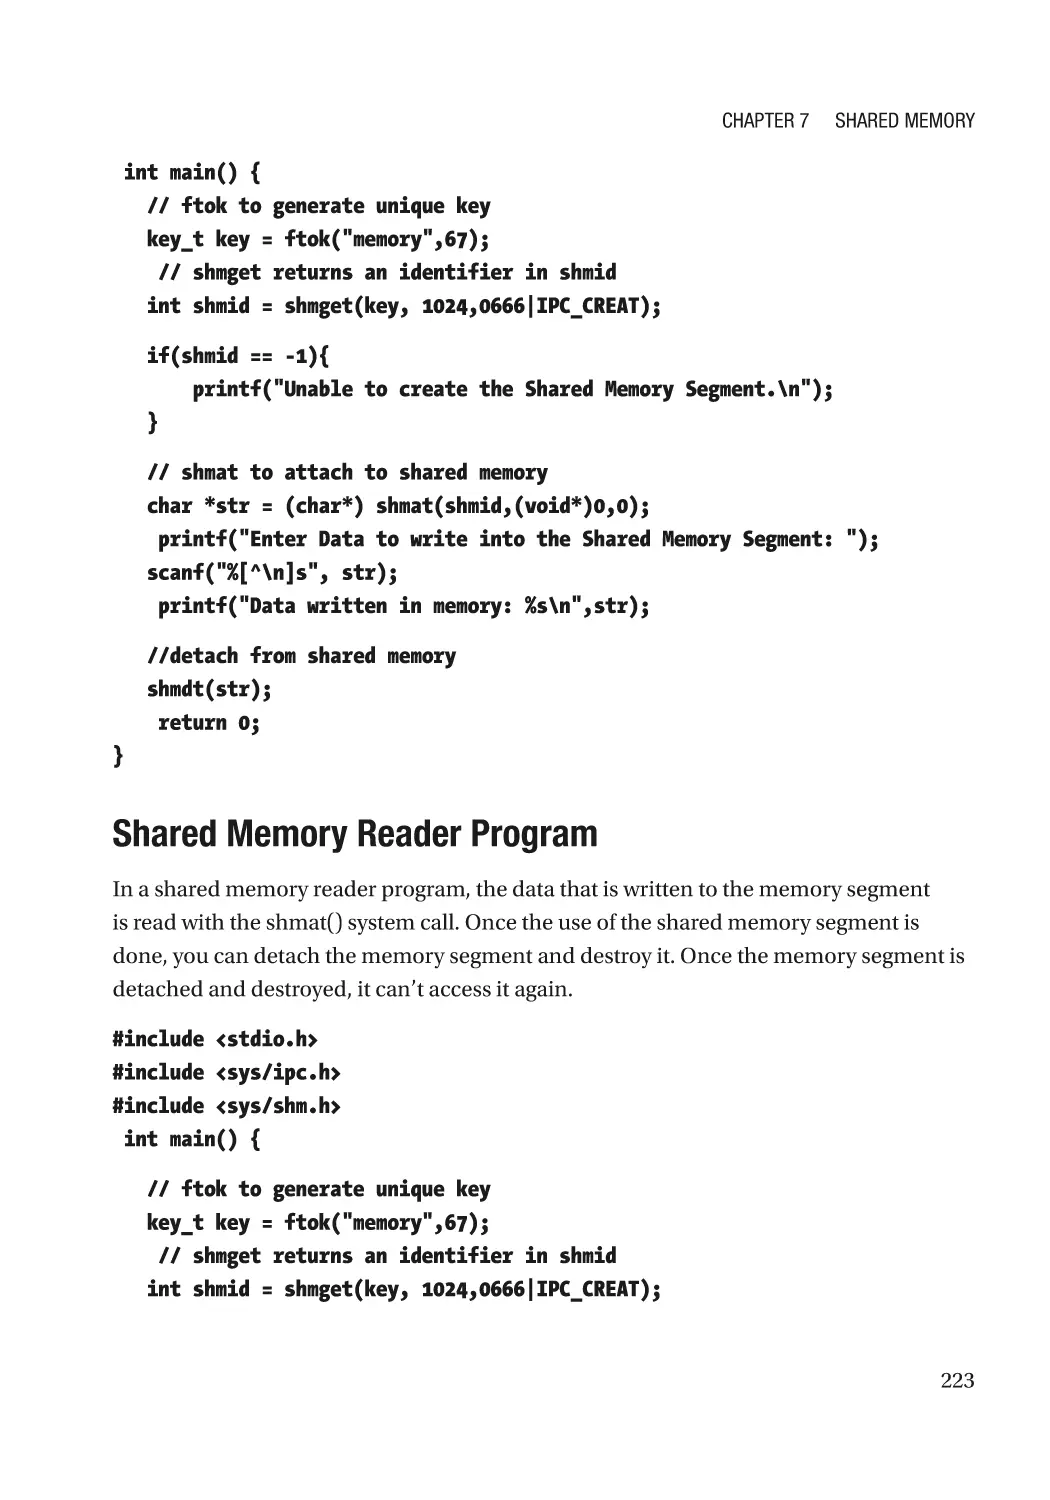 Shared Memory Reader Program